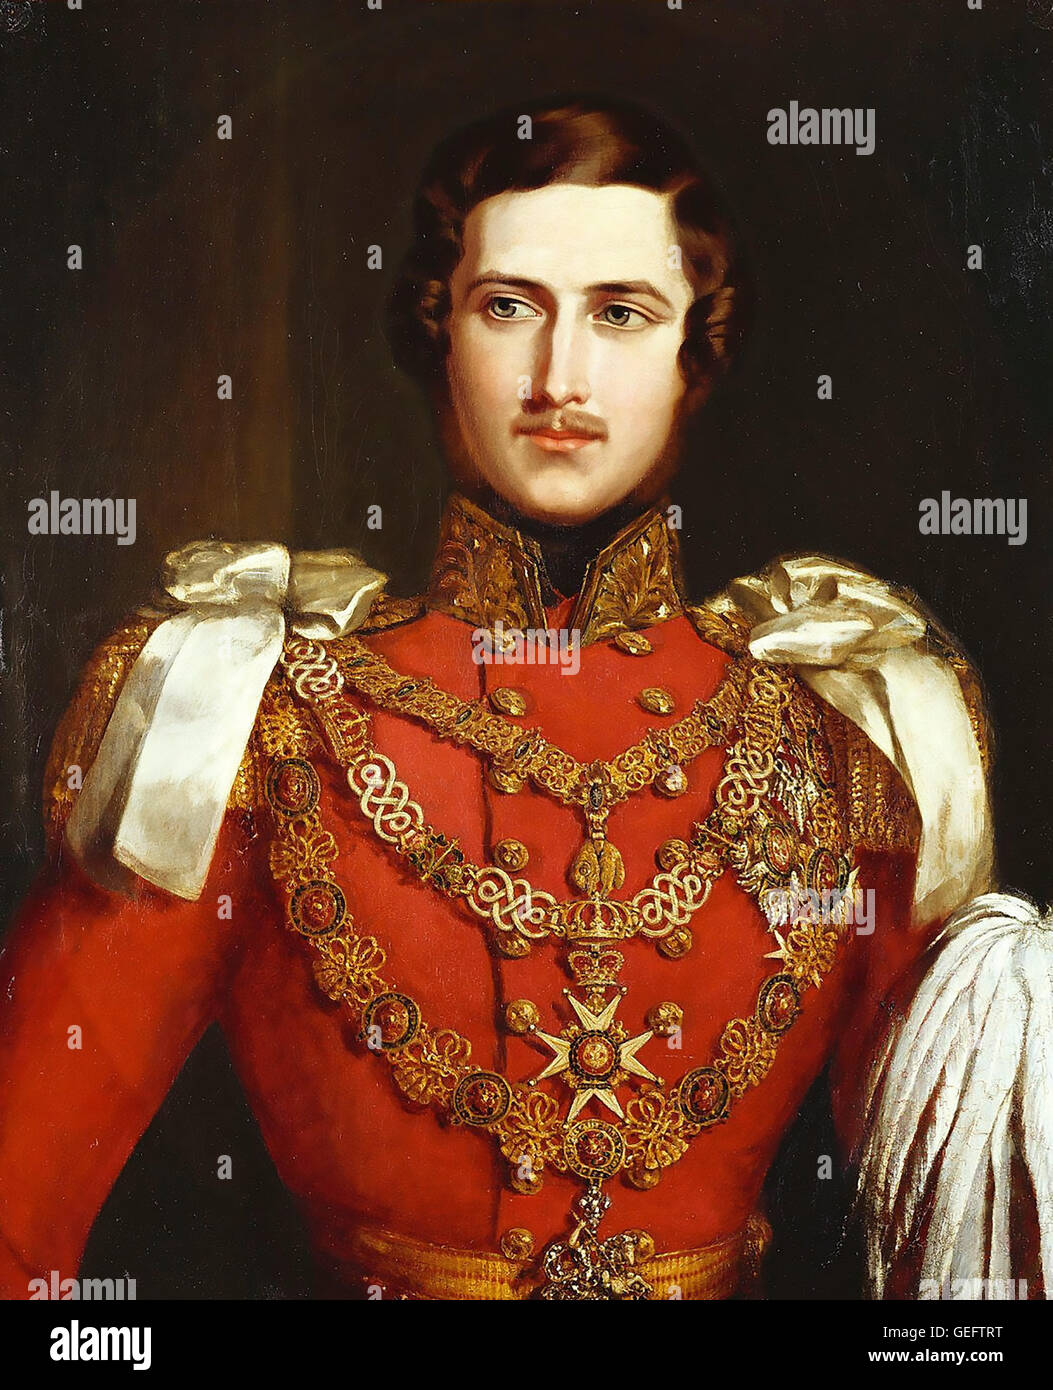 El Príncipe ALBERTO DE SAJONIA-Coburgo y Gotha (1819-1861), Príncipe Consorte de la Reina Victoria. Pintado por John Partridge en 1840 junto con un retrato de la Reina Victoria en solitario en el mismo año. Foto de stock